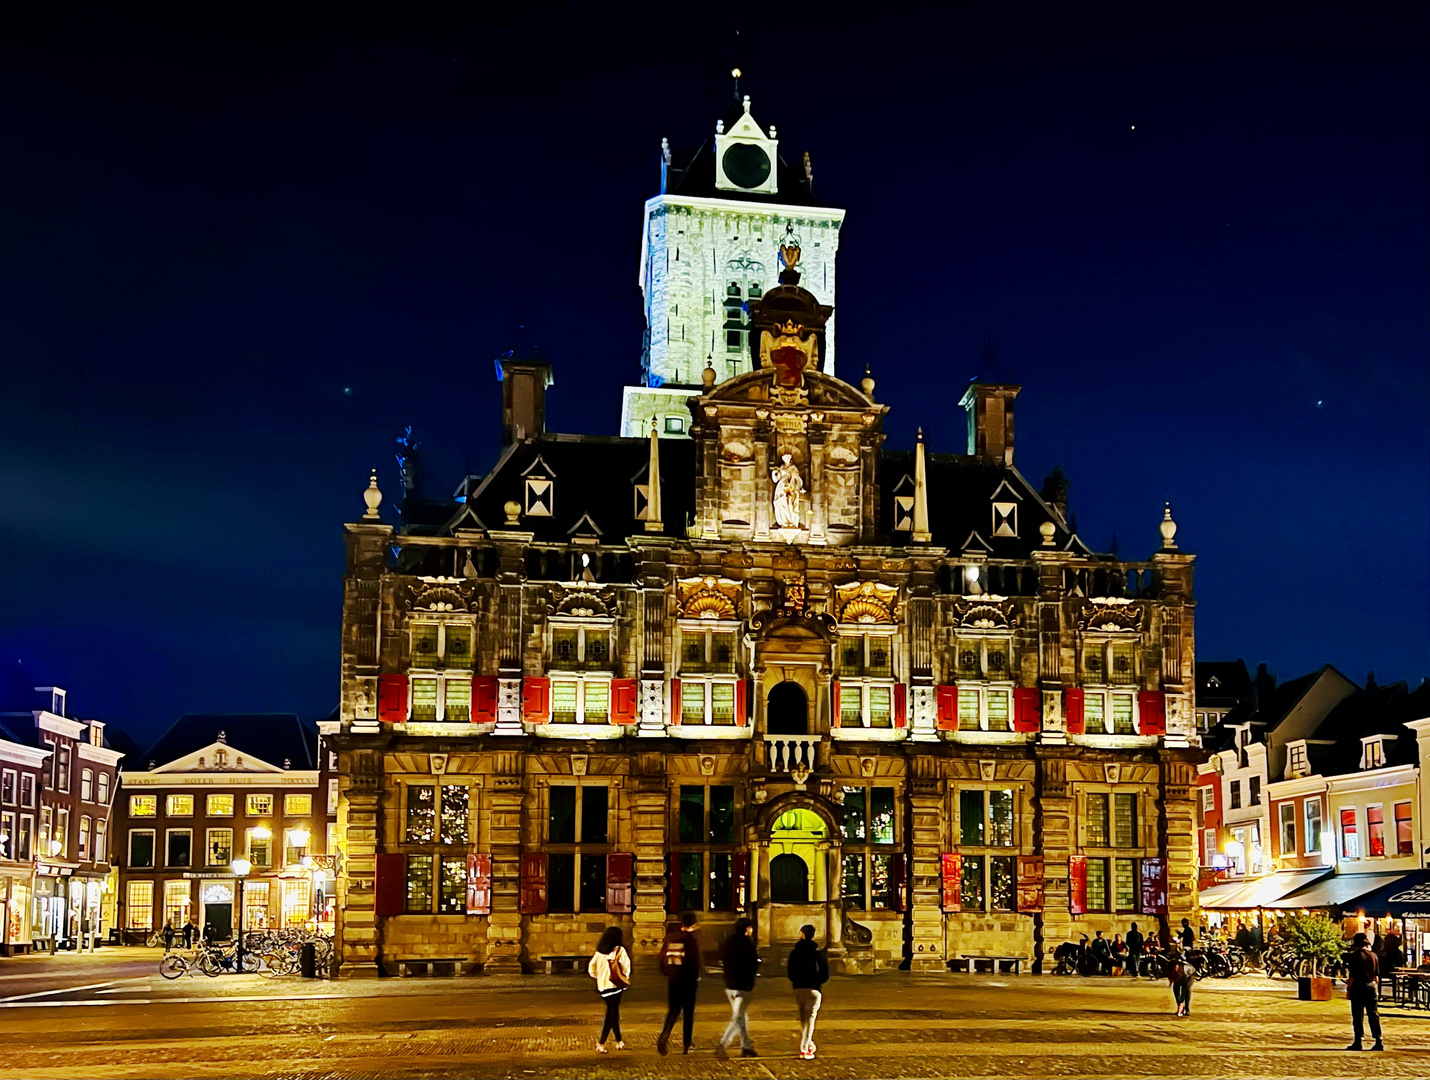 Das Rathaus von Delft...